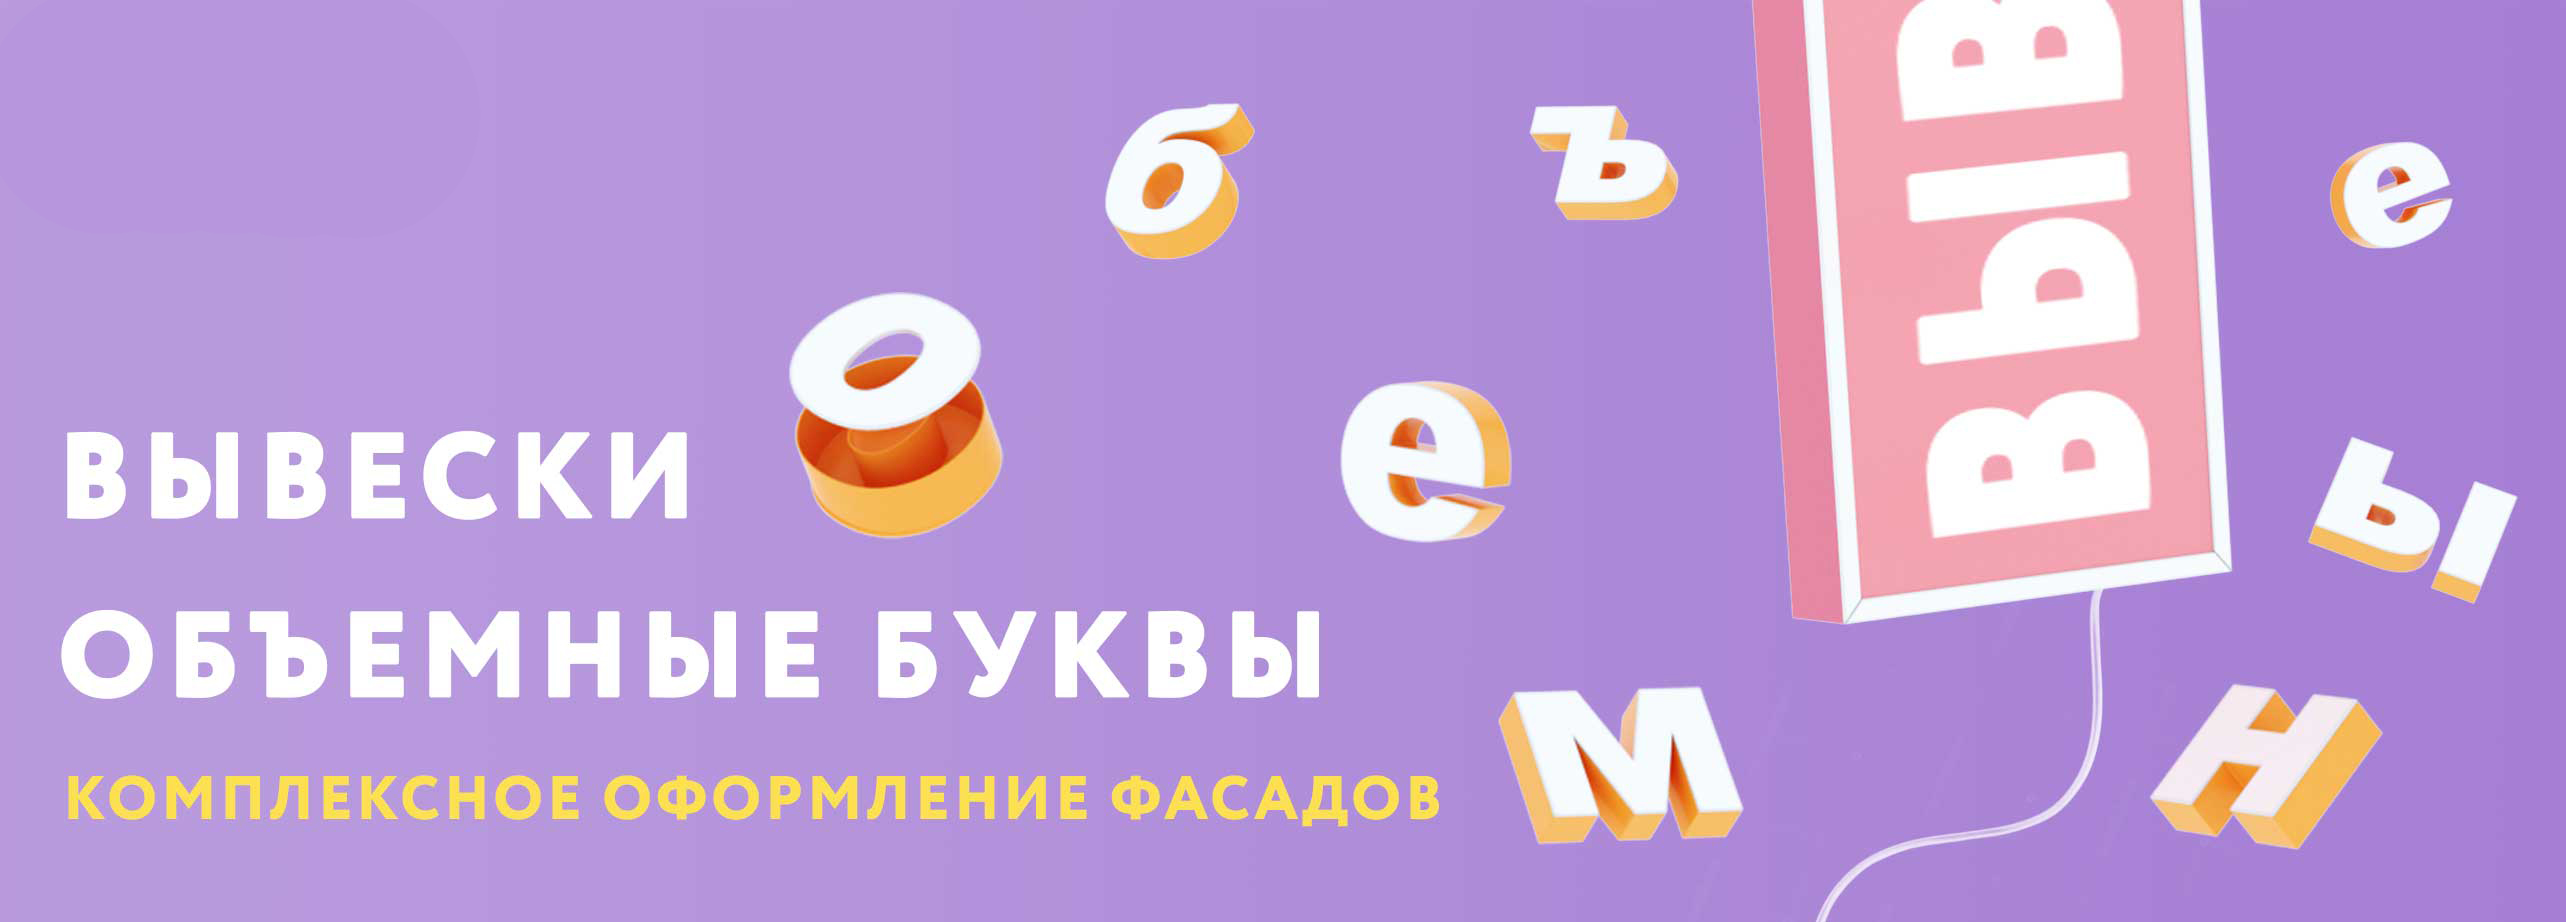 Вывески, лайтбоксы, объемные буквы - наружная реклама в Киеве